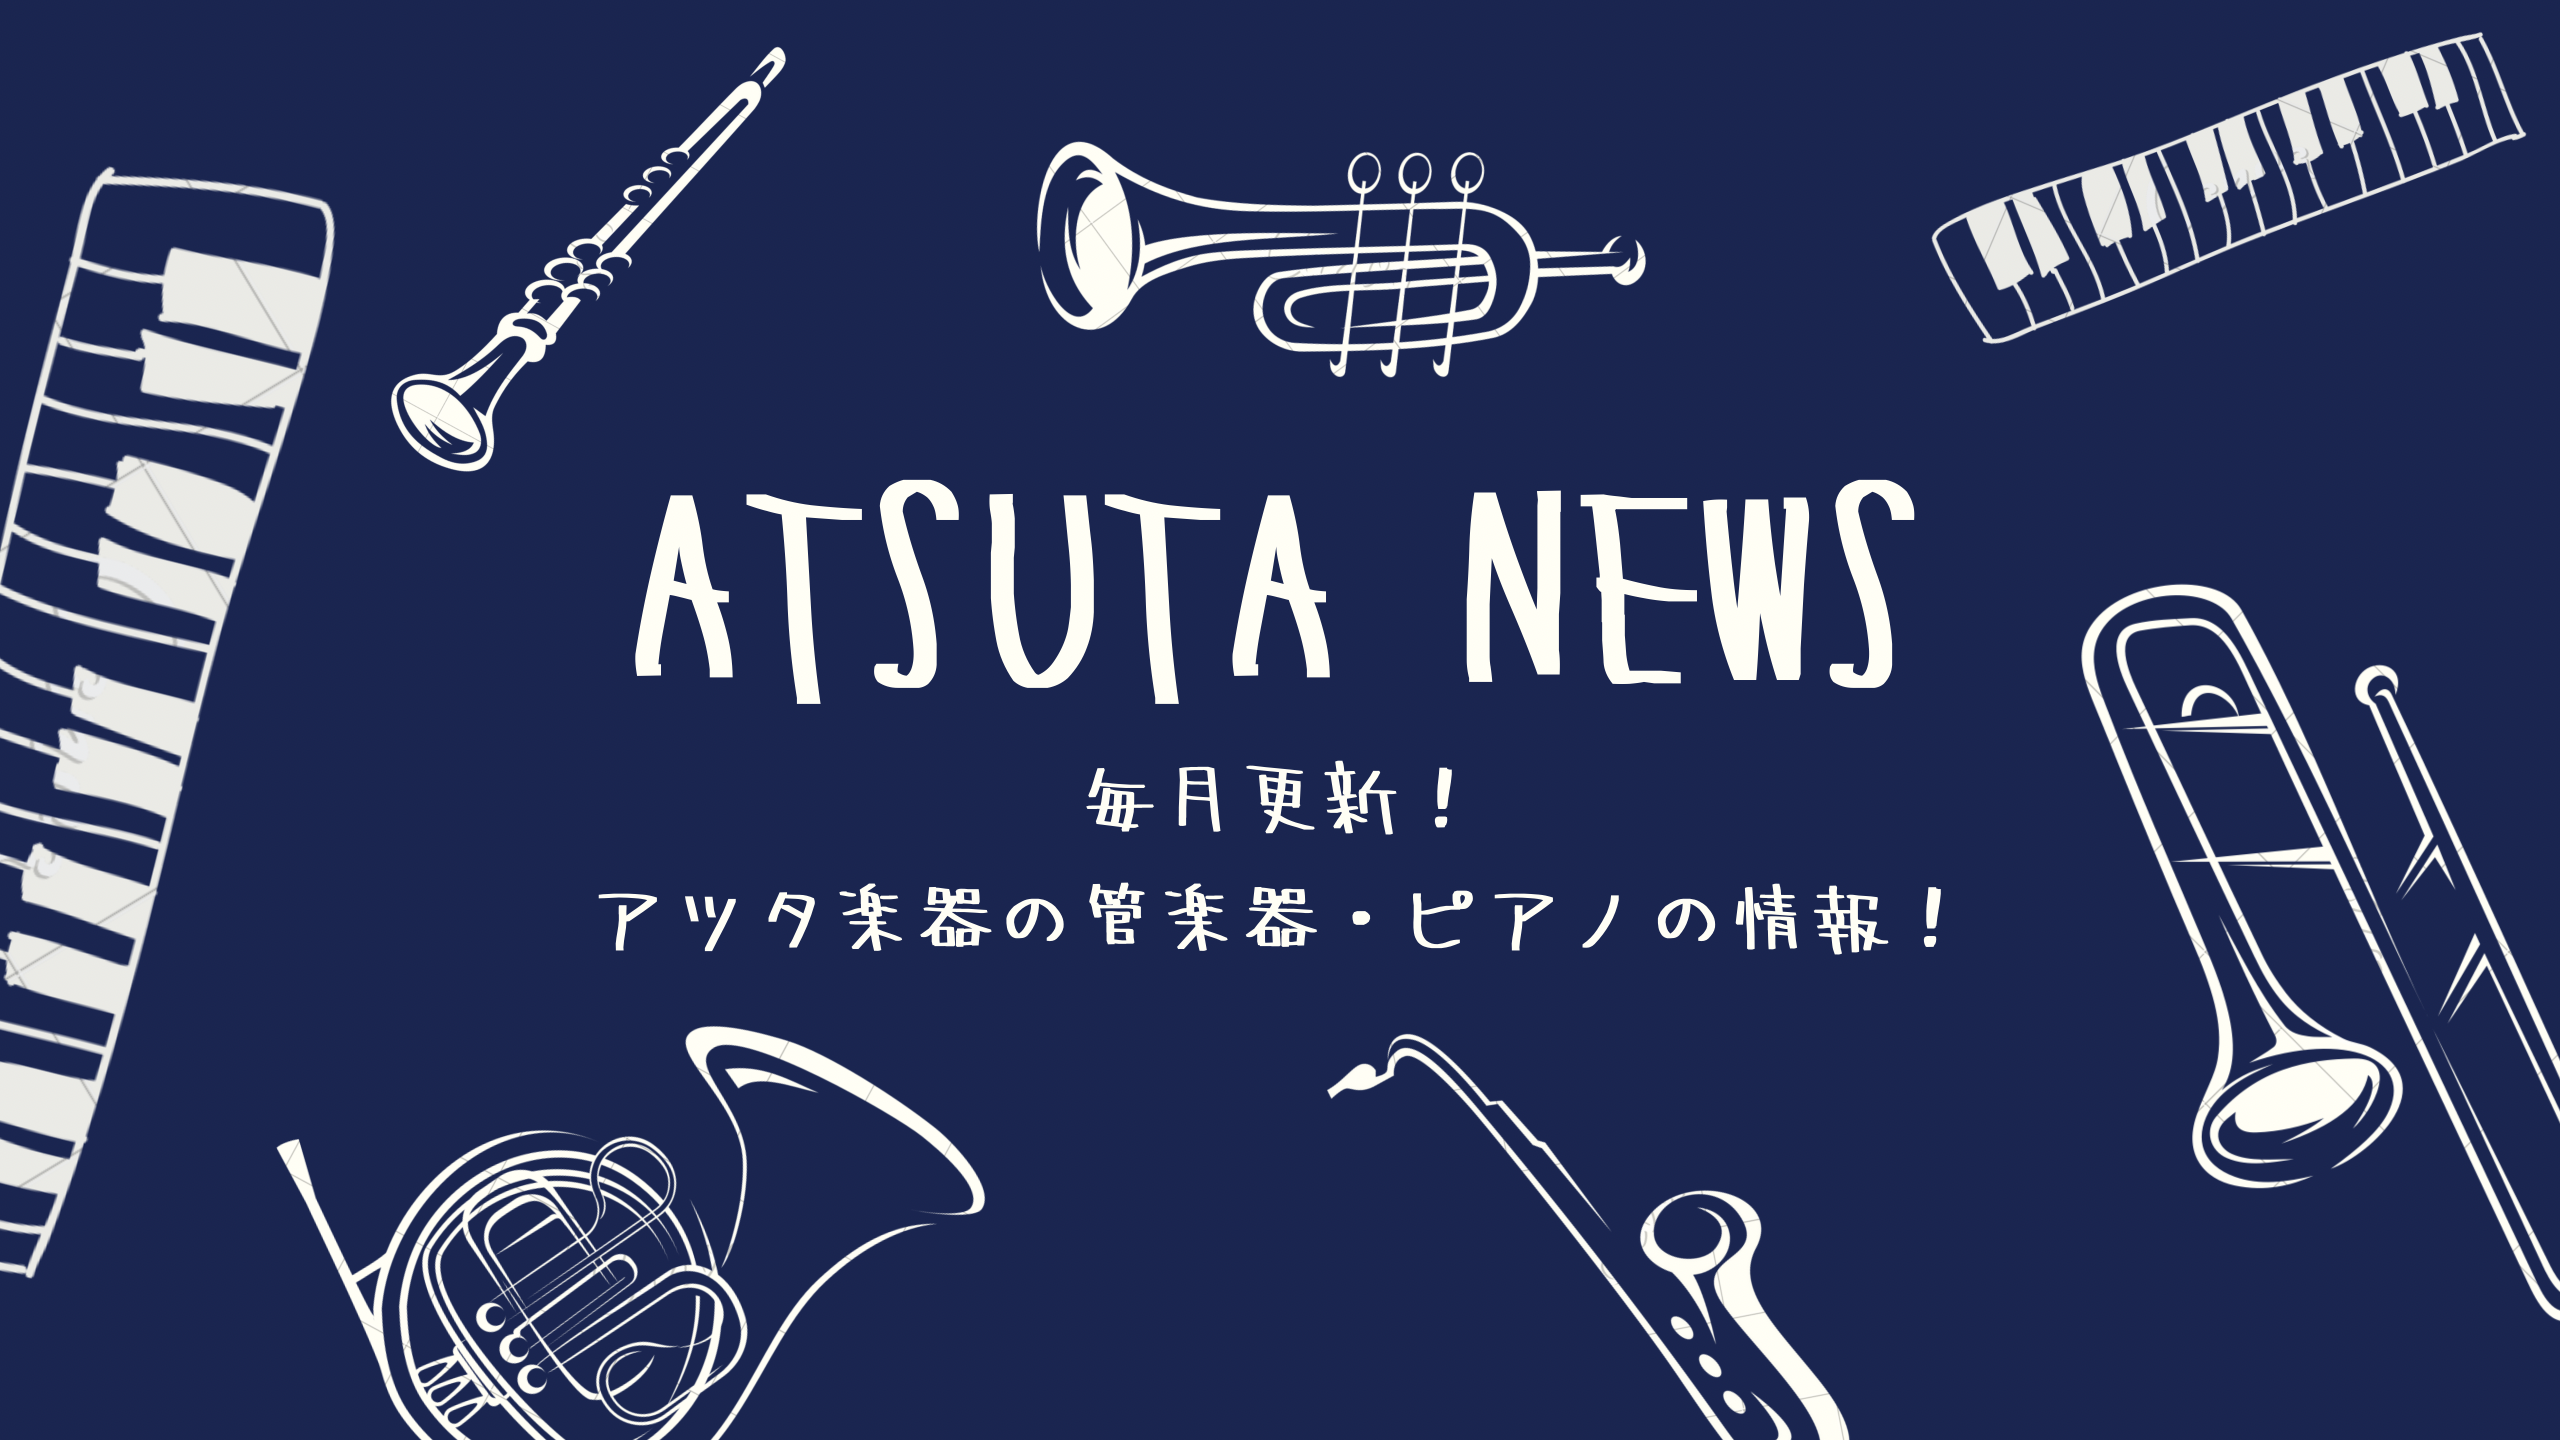 【ATSUTA NEWS Vol.7】